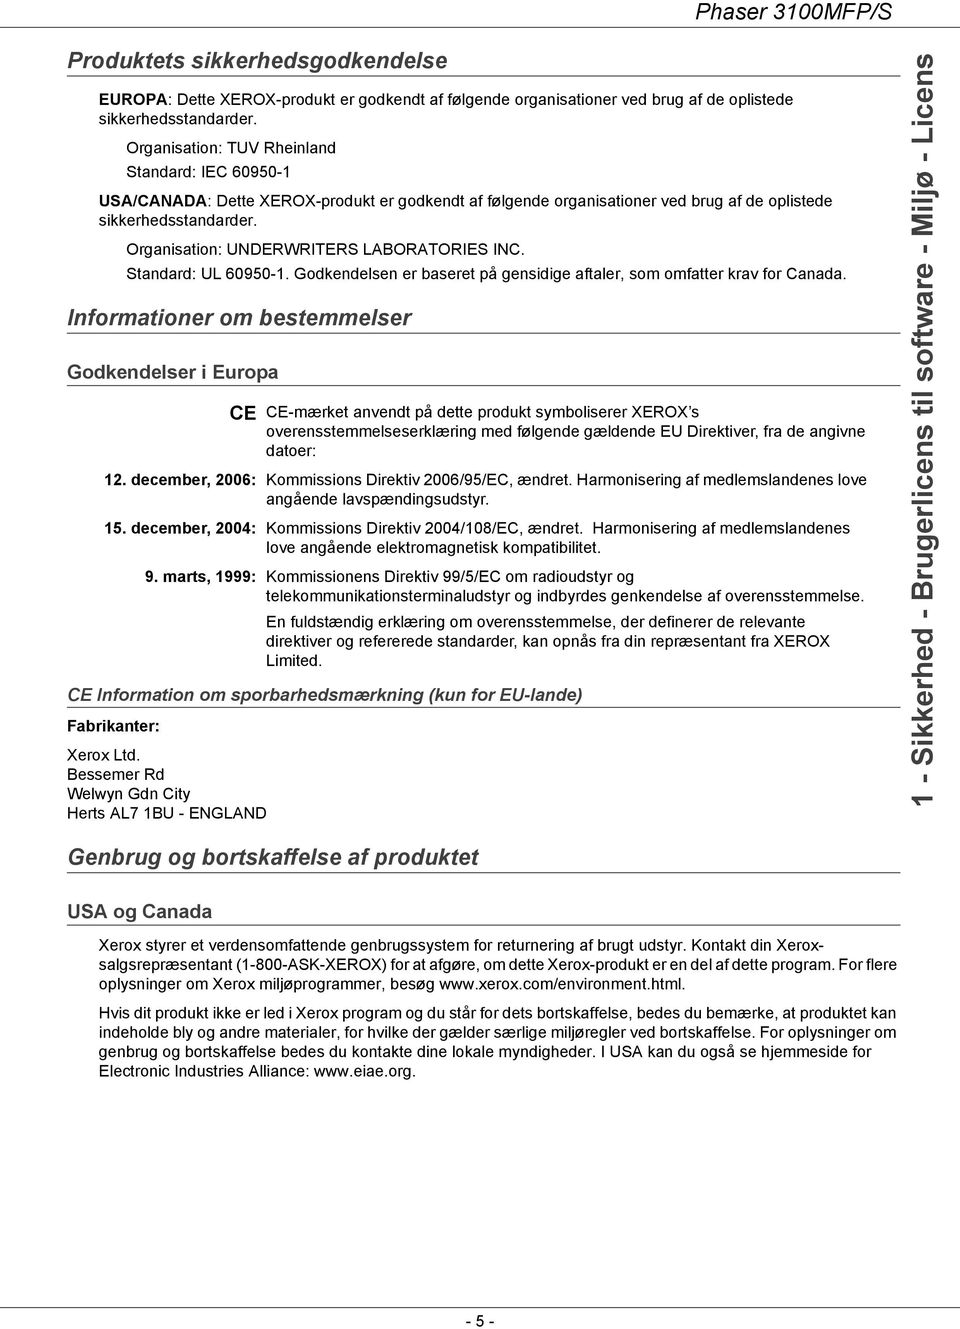 Organisation: UNDERWRITERS LABORATORIES INC. Standard: UL 60950-1. Godkendelsen er baseret på gensidige aftaler, som omfatter krav for Canada.